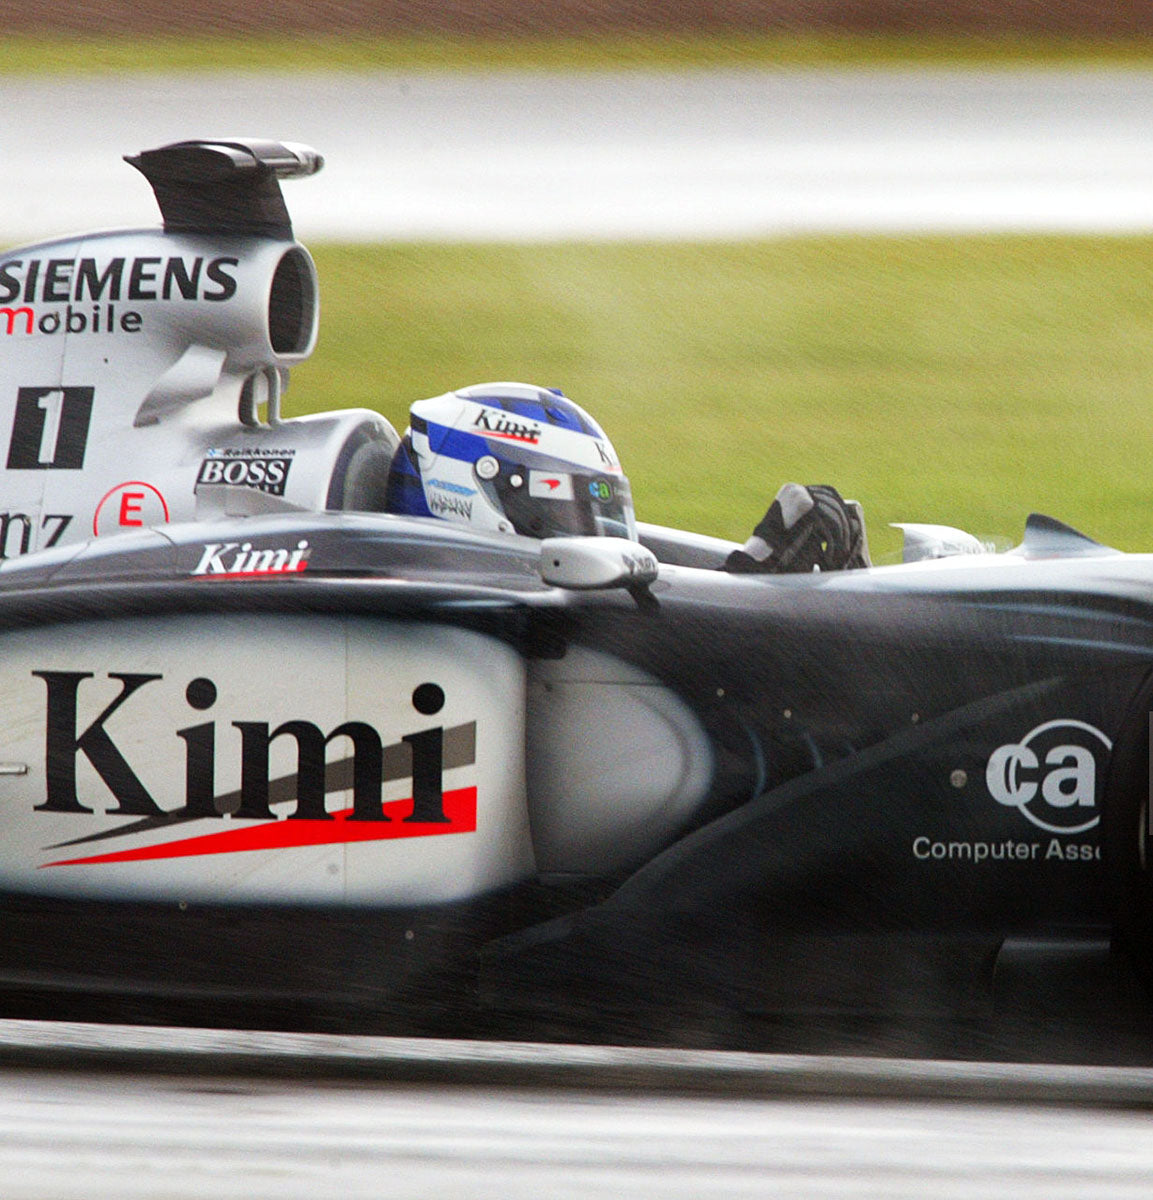 2002 Kimi Räikkönen Signed Race Used McLaren Mercedes F1 Gloves